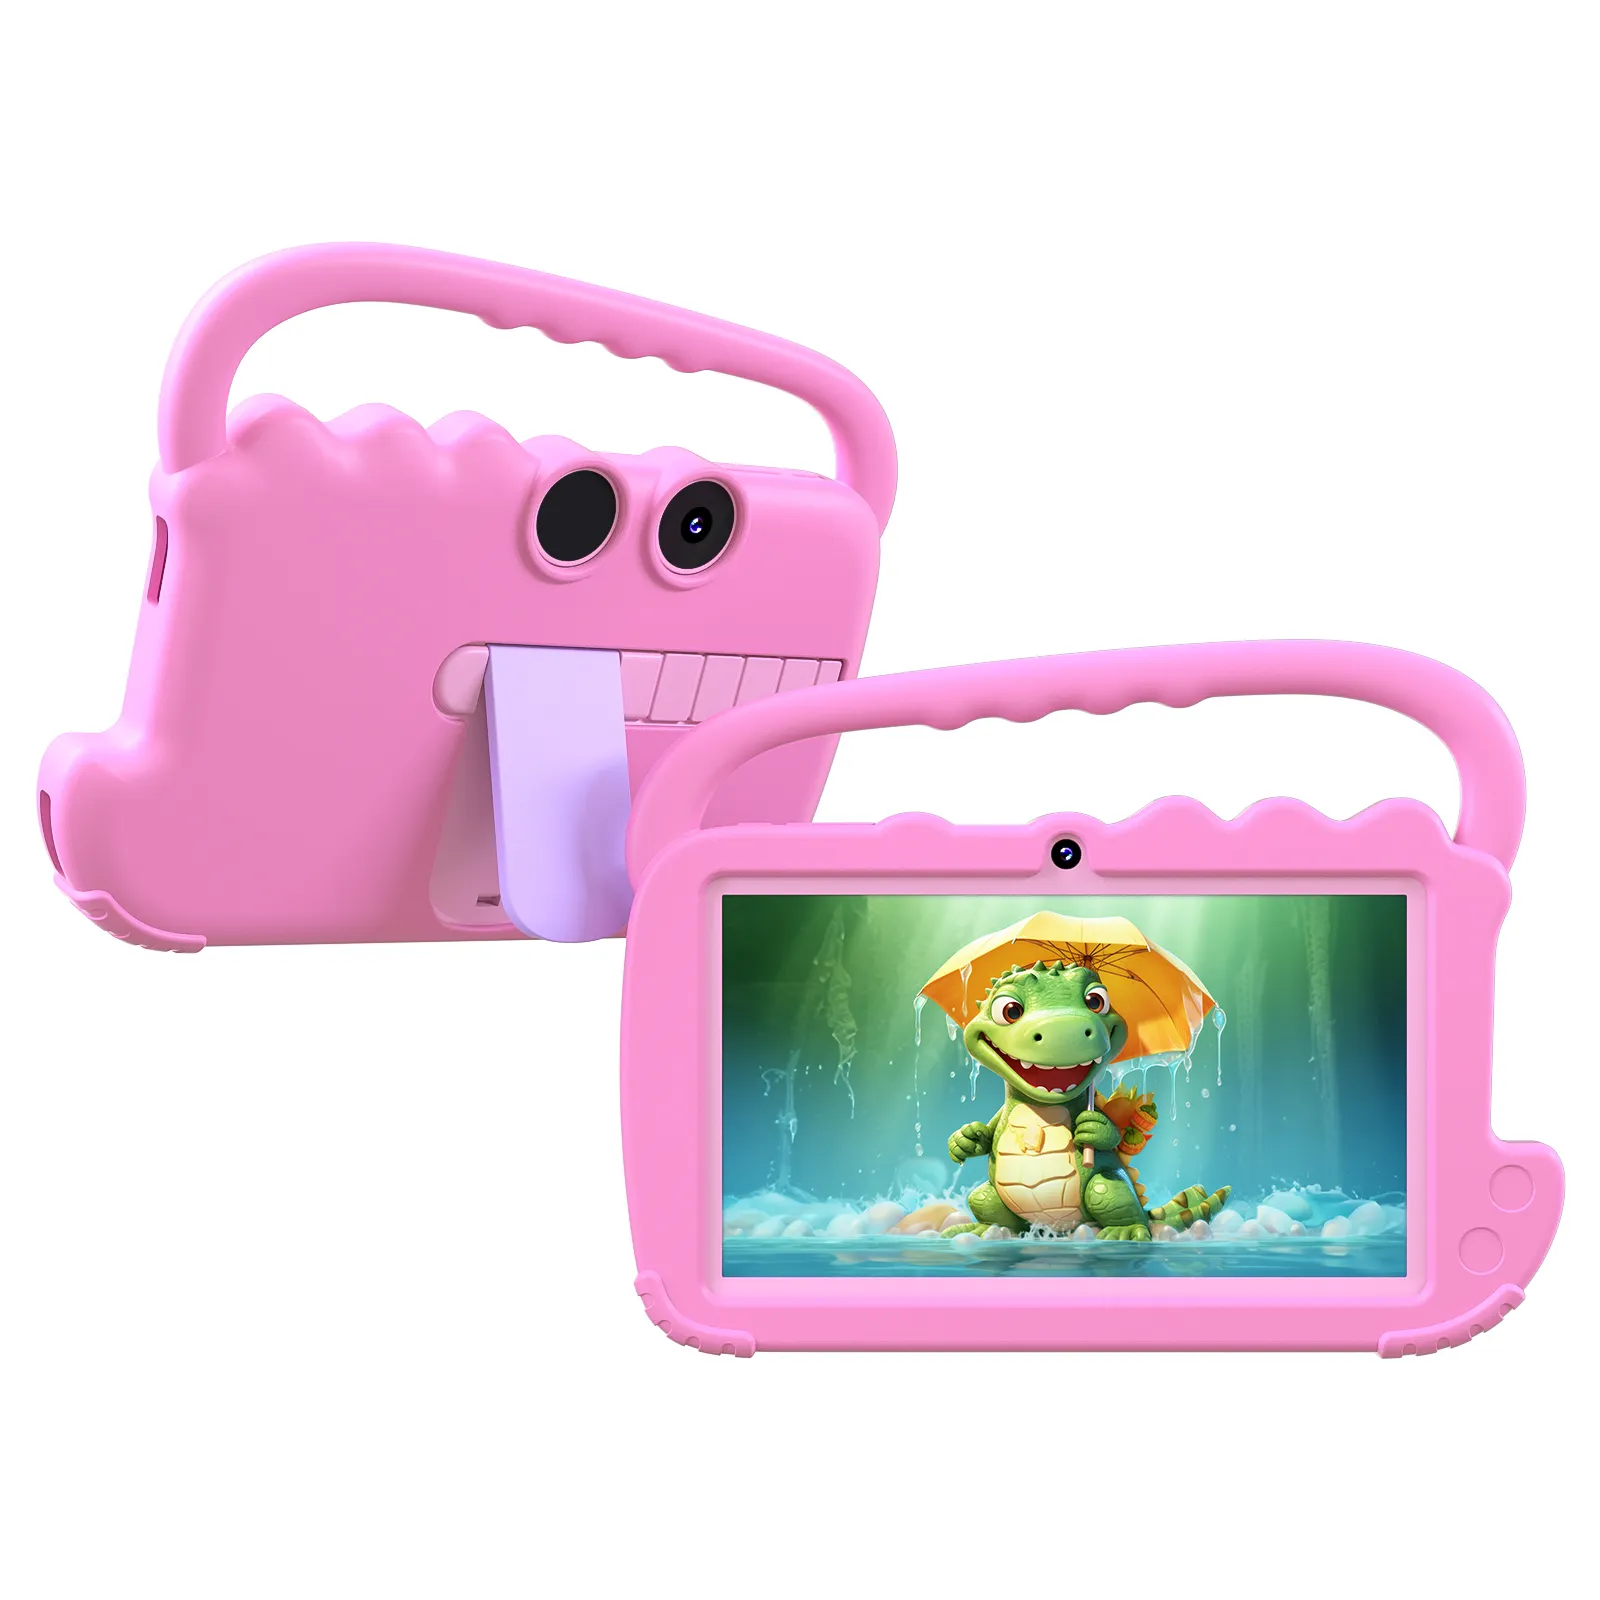 7インチ2GB32GBアニマルデザイン教育学習タブTablette Pour Enfant Kids Tablet with Sim Card Slot